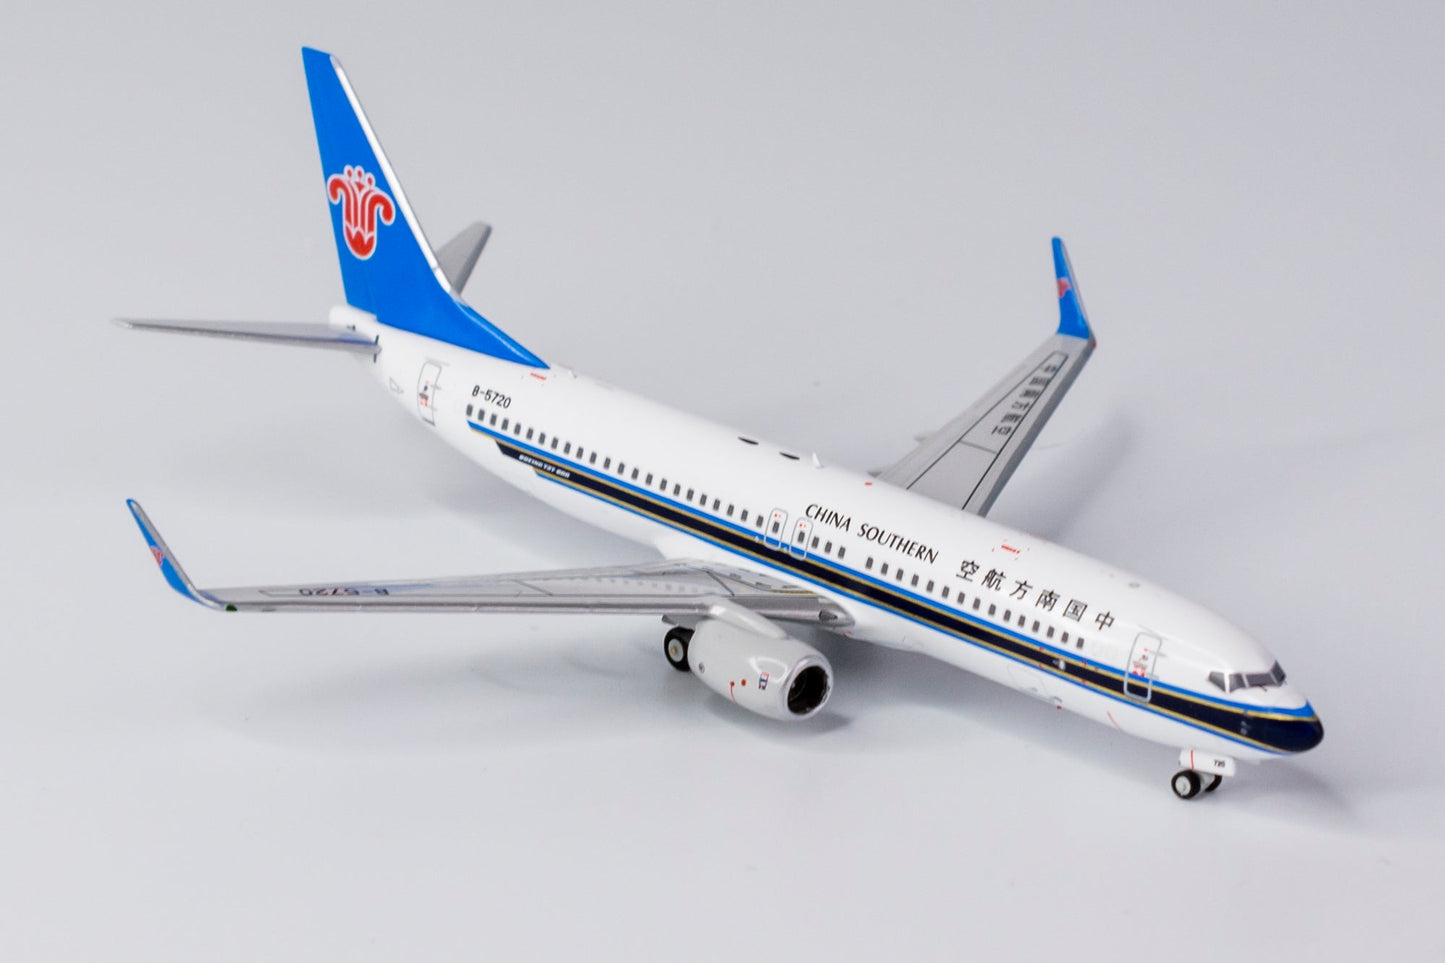 *1/400 China Southern Airlines B 737-800/w NG Models 58116